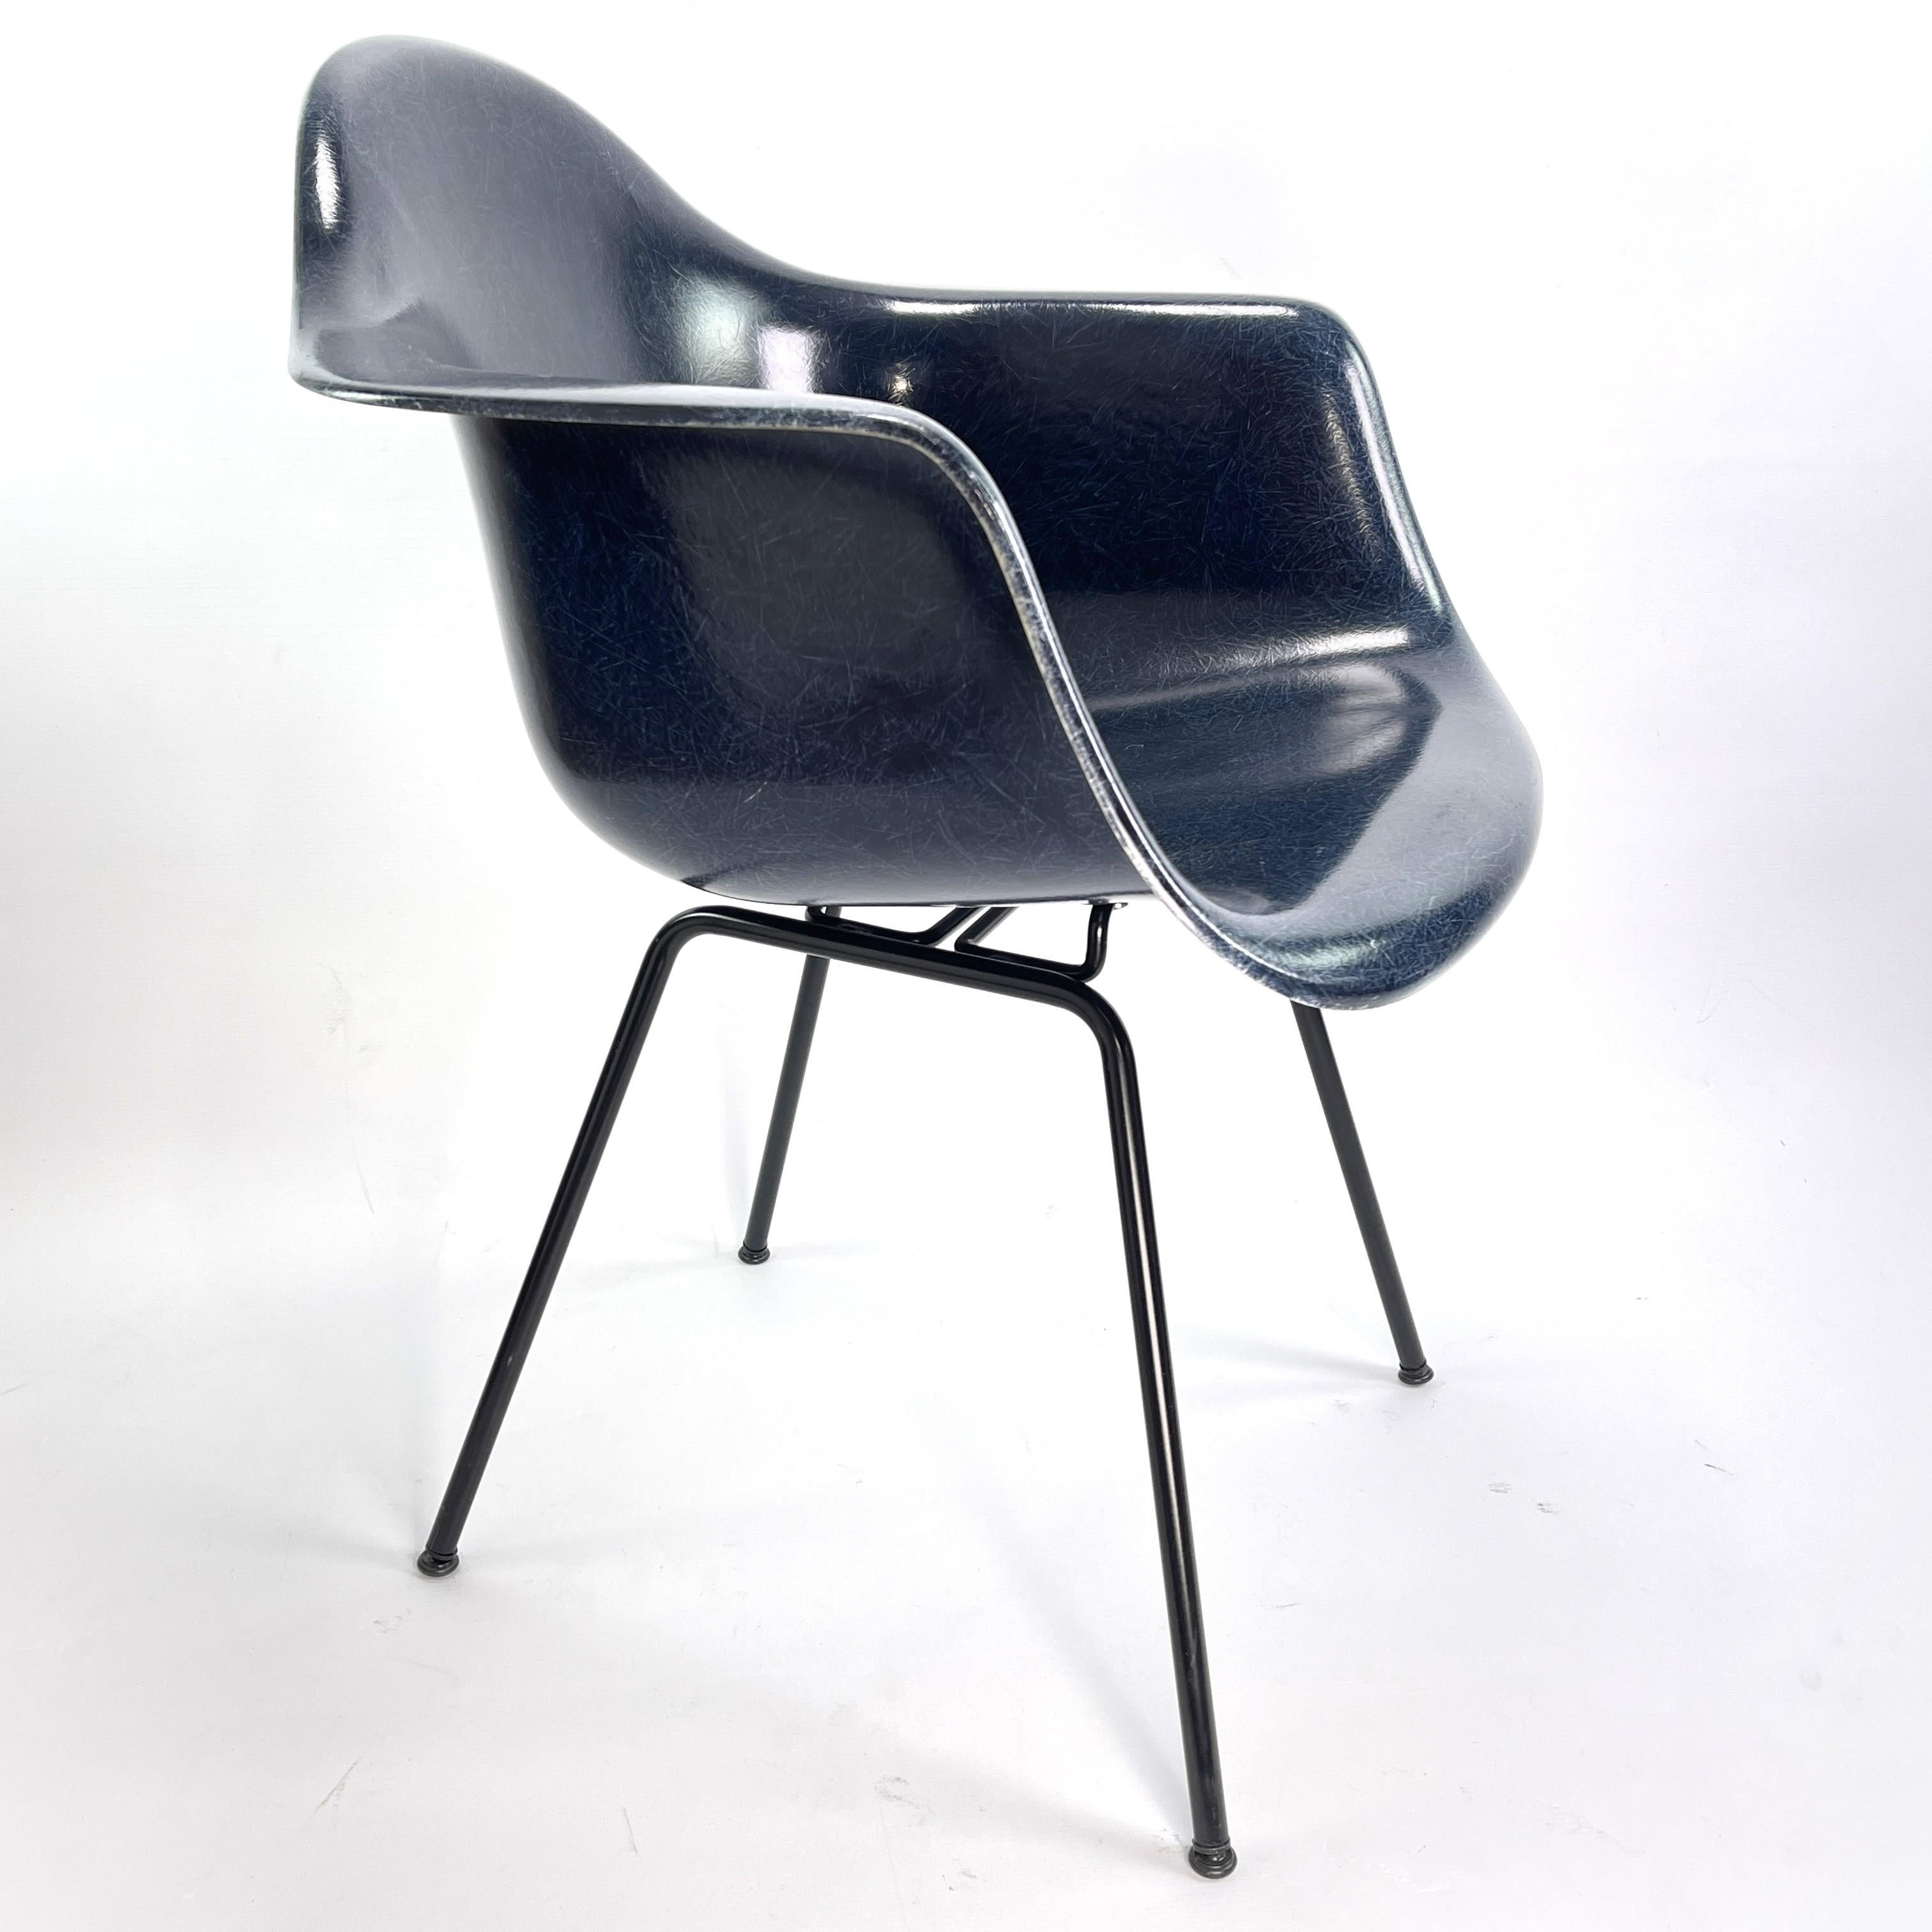 Charles Eames Modernica Los Angeles Fauteuil Siège Fibre de verre

Le fauteuil en fibre de verre du duo de designers Charles et Ray Eames est certainement l'une des créations les plus importantes et les plus connues du XXe siècle. La chaise a été